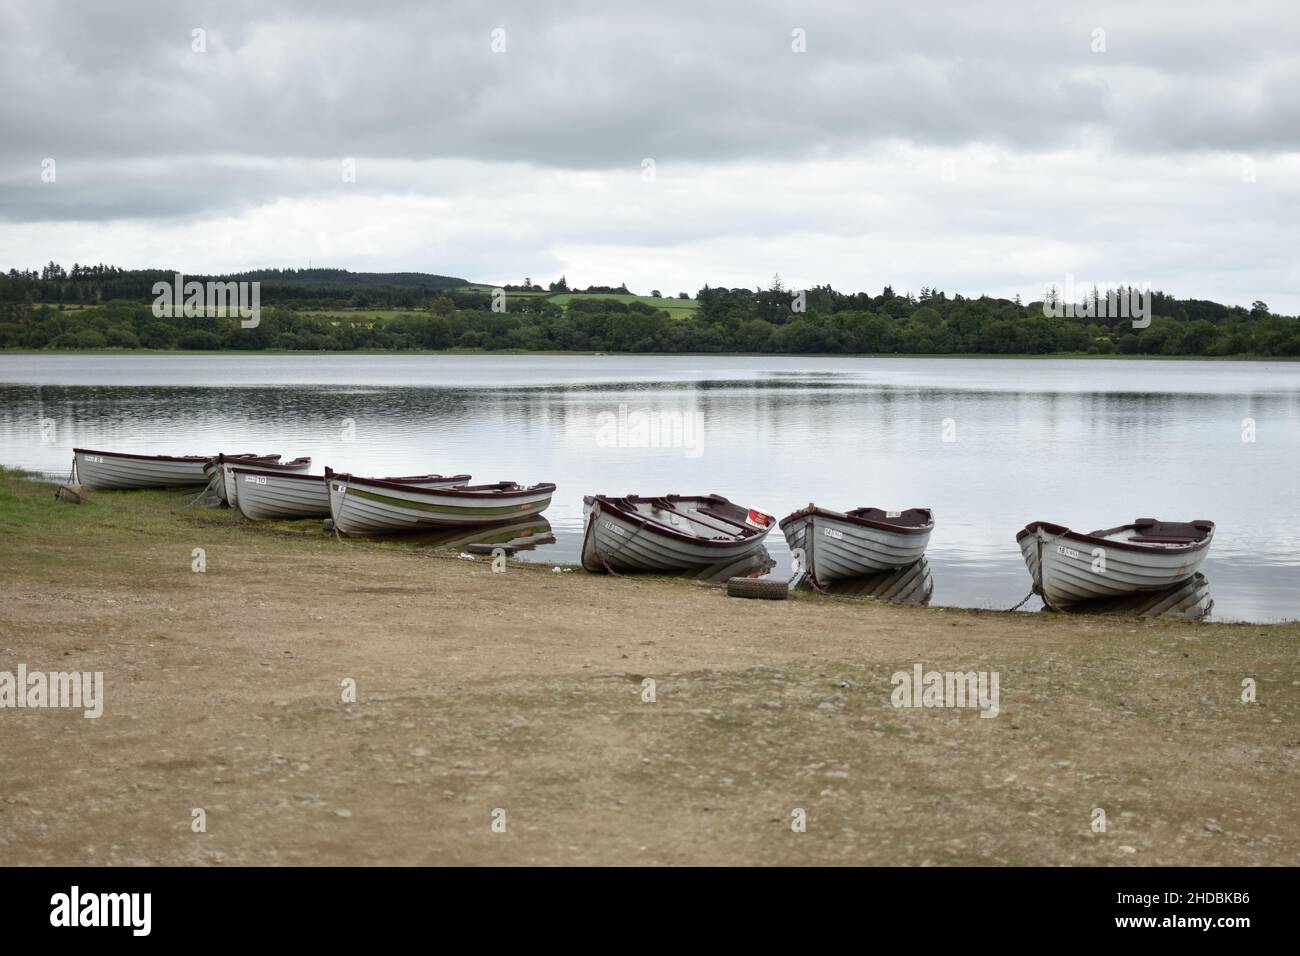 Primo piano di barche a remi in legno su un lago in una giornata nuvolosa Foto Stock